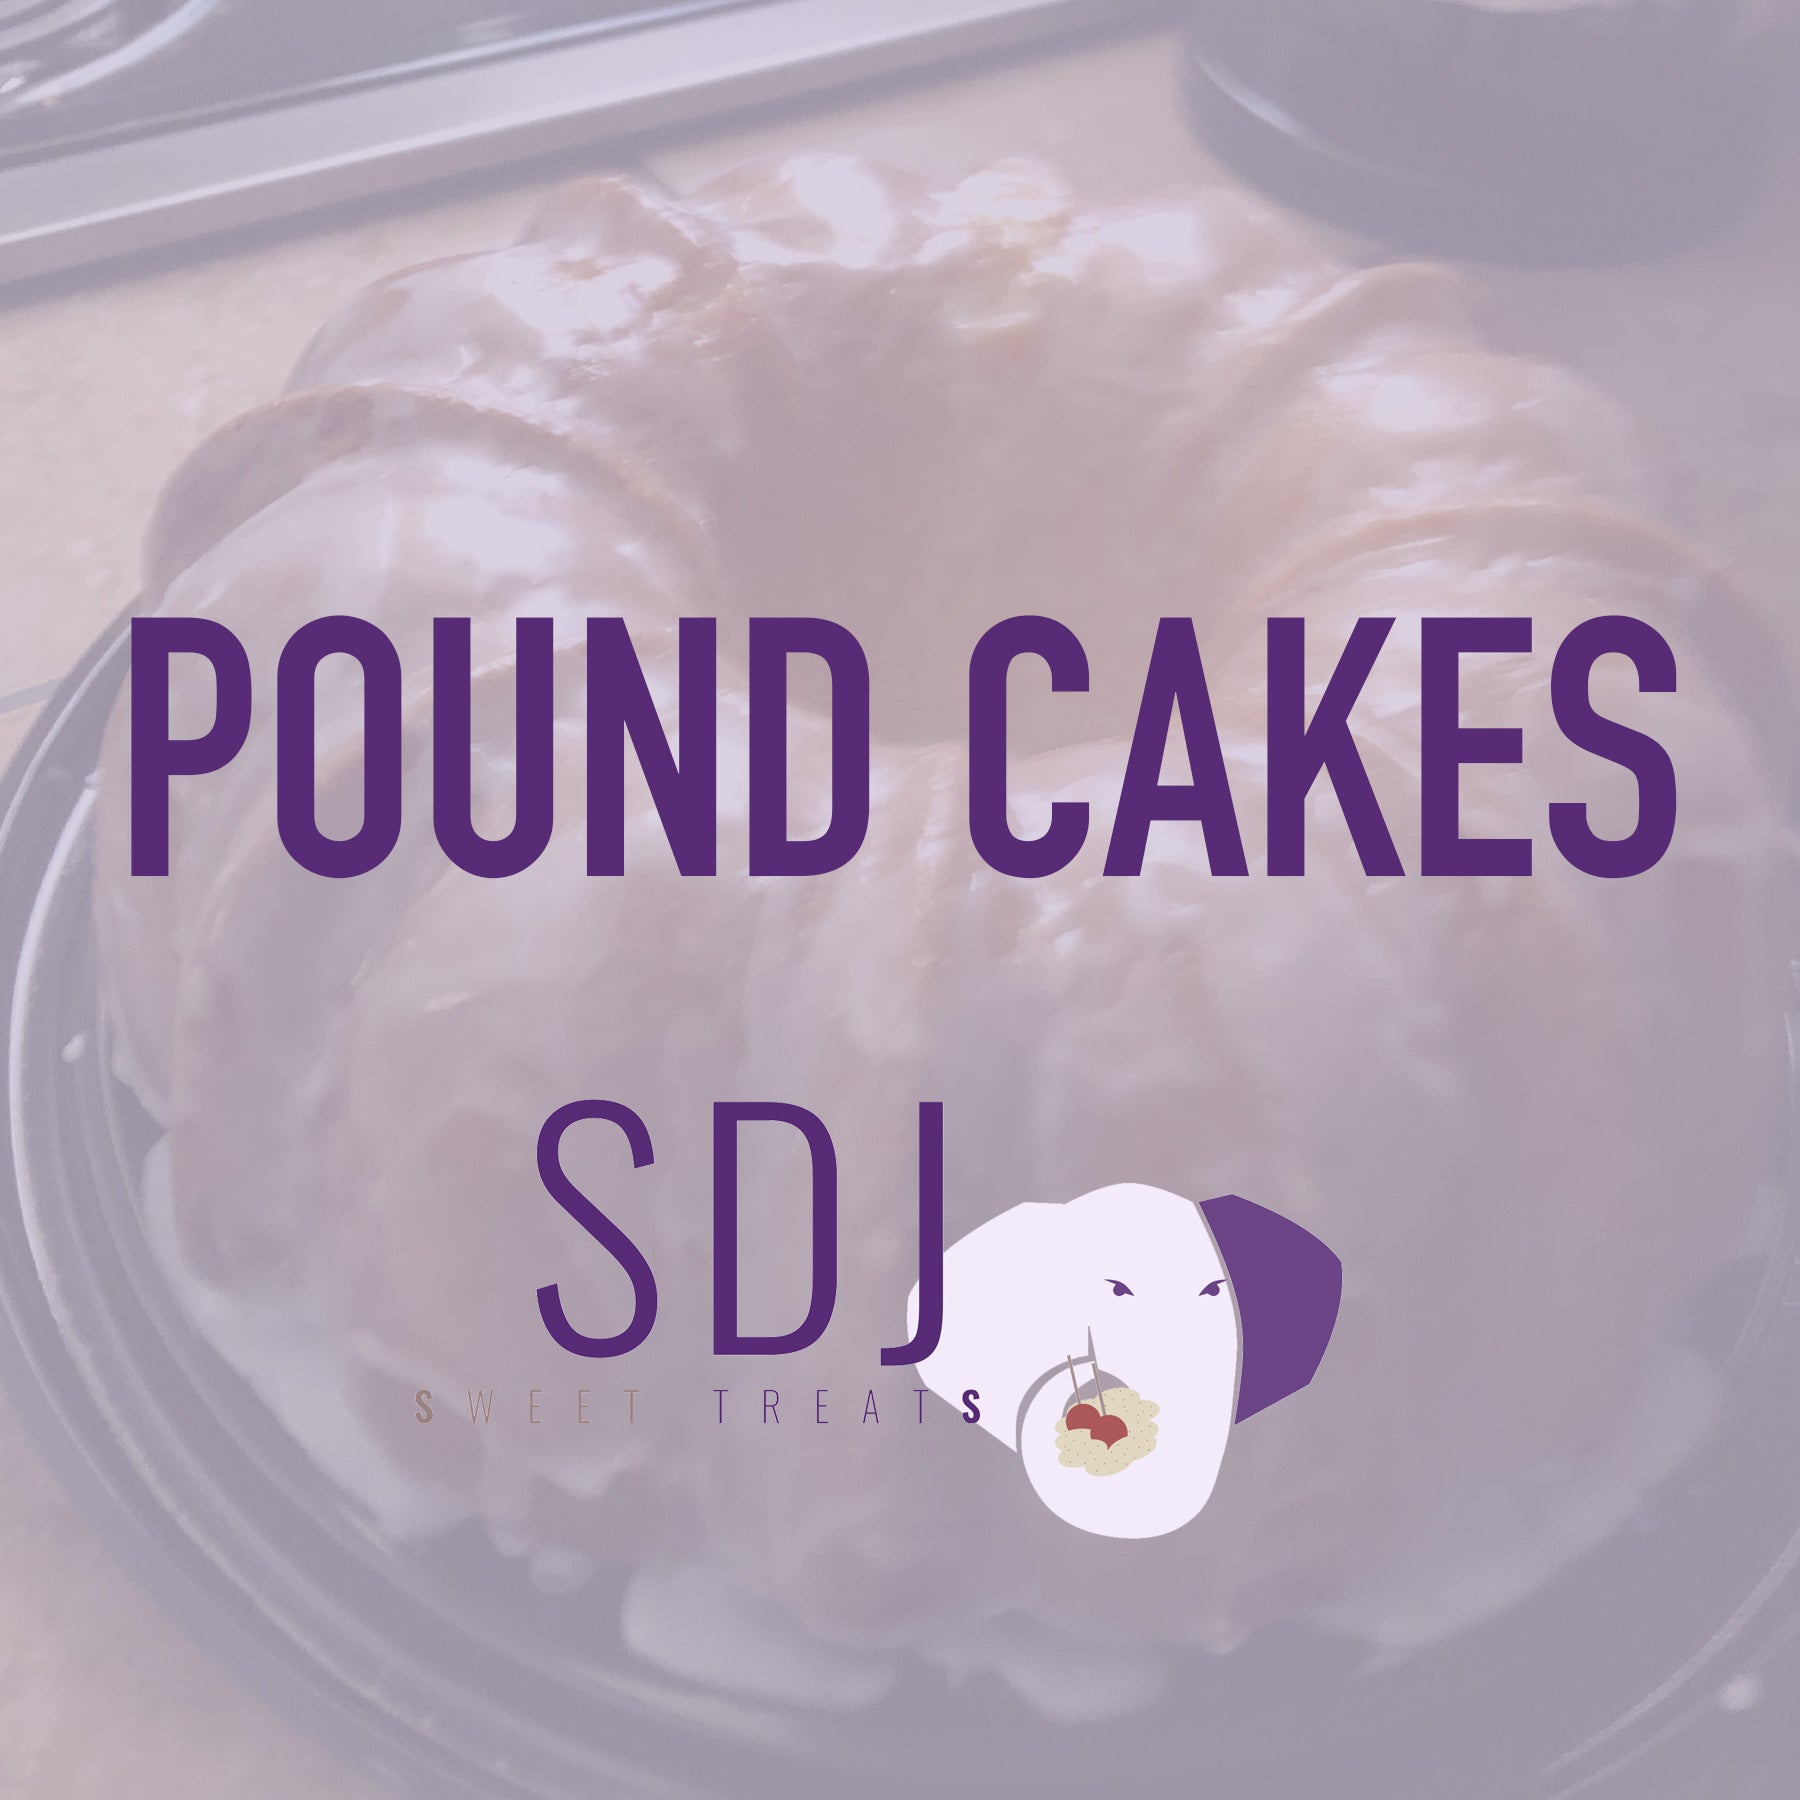 Pound Cake Sdj Sweet Treats Llc 